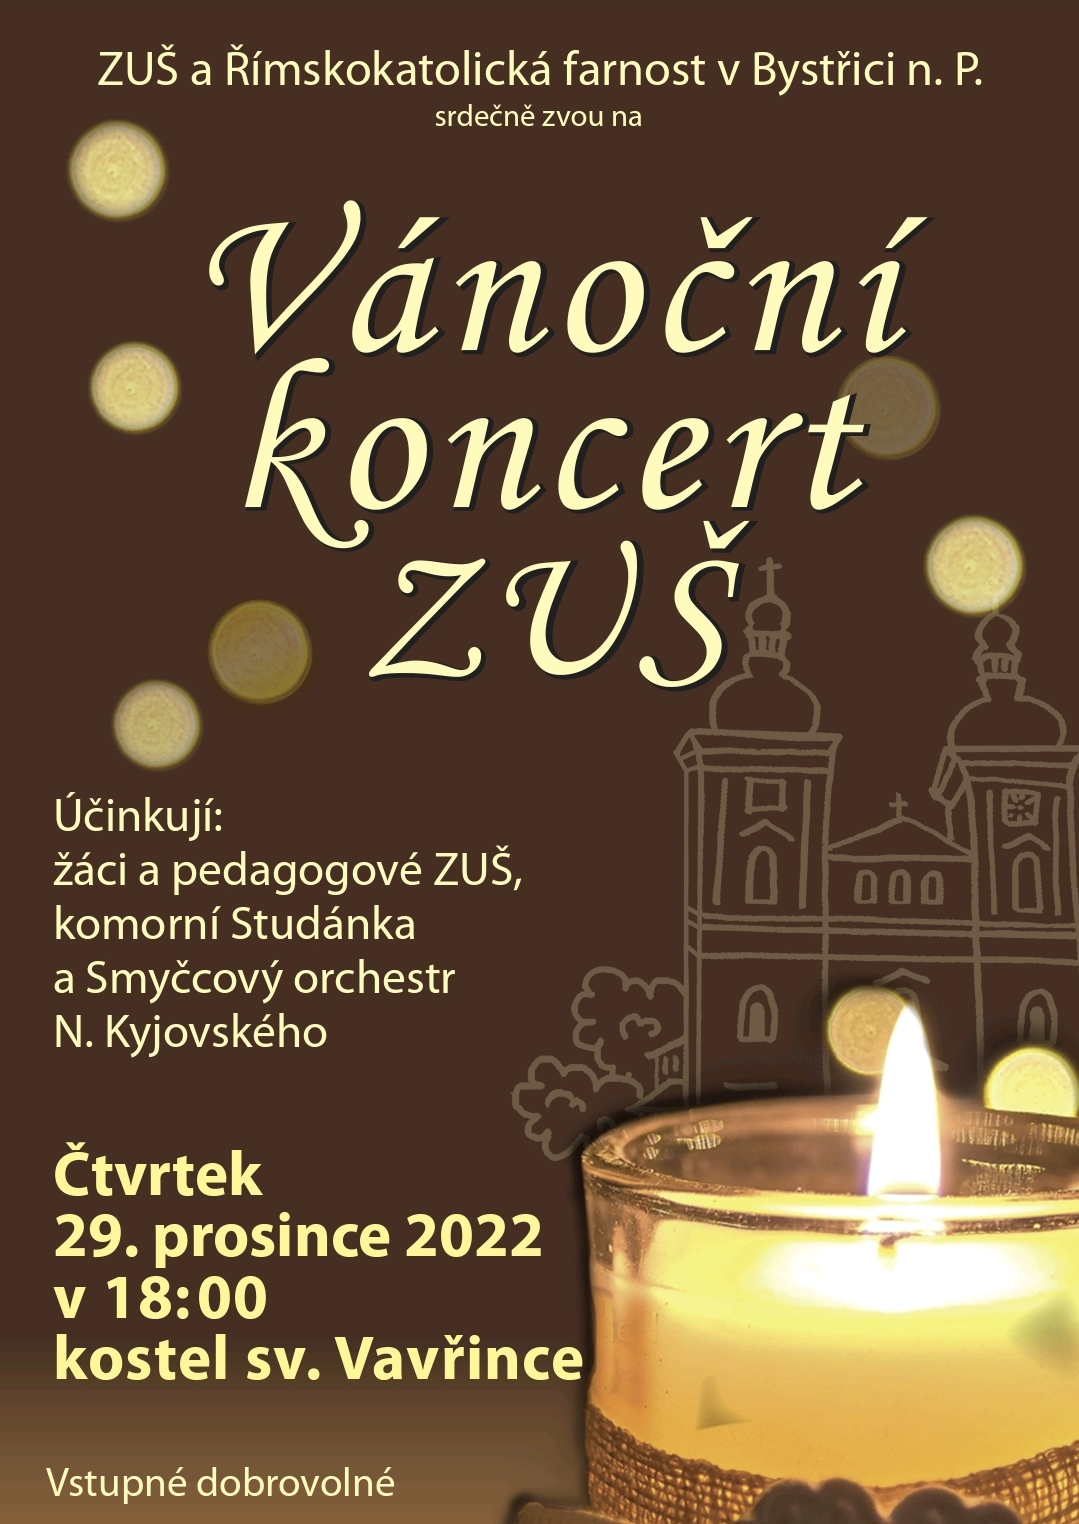 Vánoční koncert v kostele sv. Vavřince